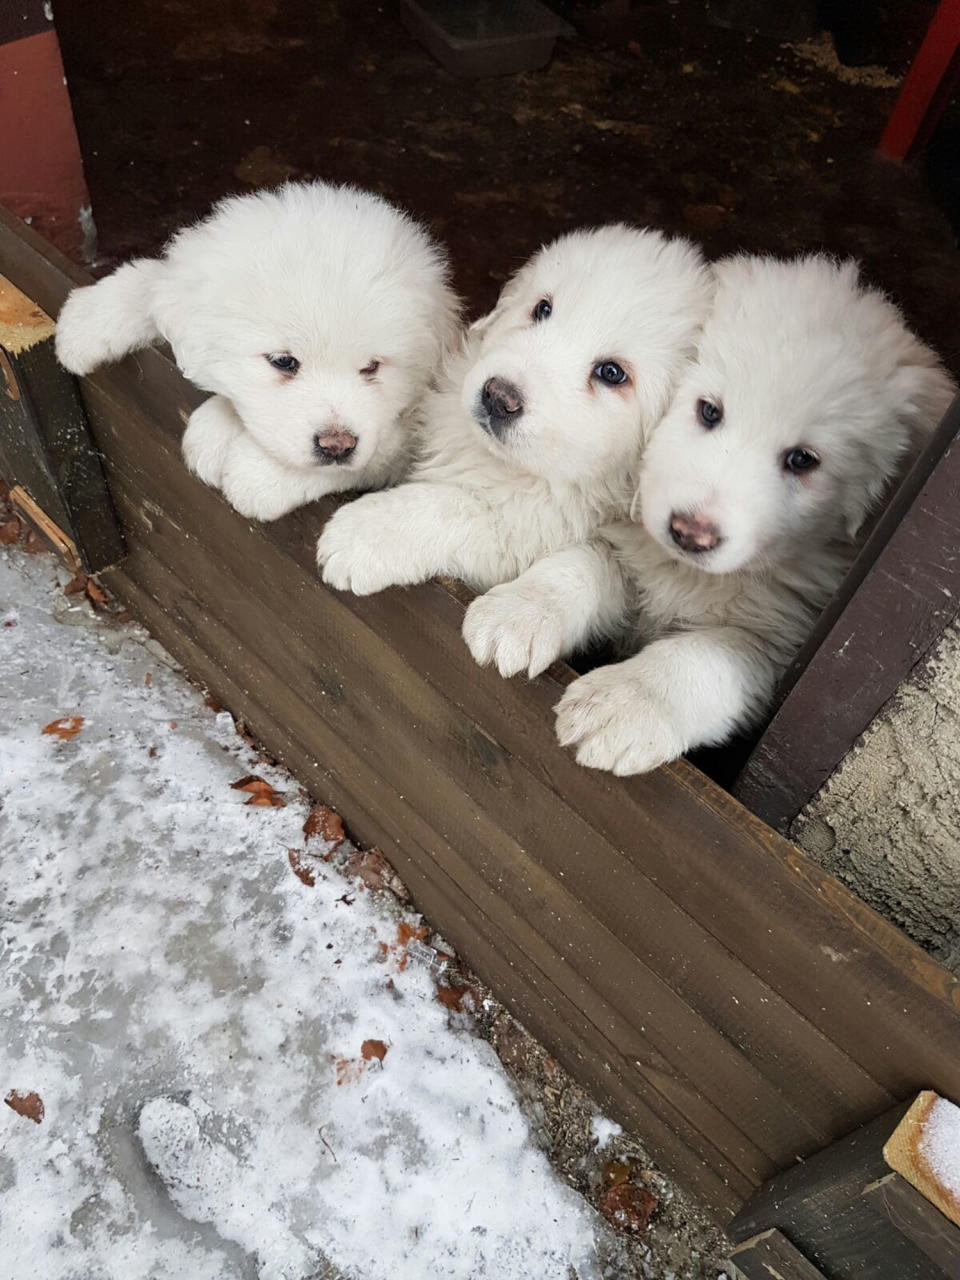 En esta imagen, tomada el 17 de enero de 2017, tres cachorros en el at the Hotel Rigopiano, cerca de Farindola, en el centro de Italia, un día antes de una avalancha de nieve que sepultó el hotel. Los equipos de emergencia rescataron el 23 de enero de 2017 a los tres cachorros, que sobrevivieron durante días bajo la nieve. (Marisa Basilavecchia via AP)